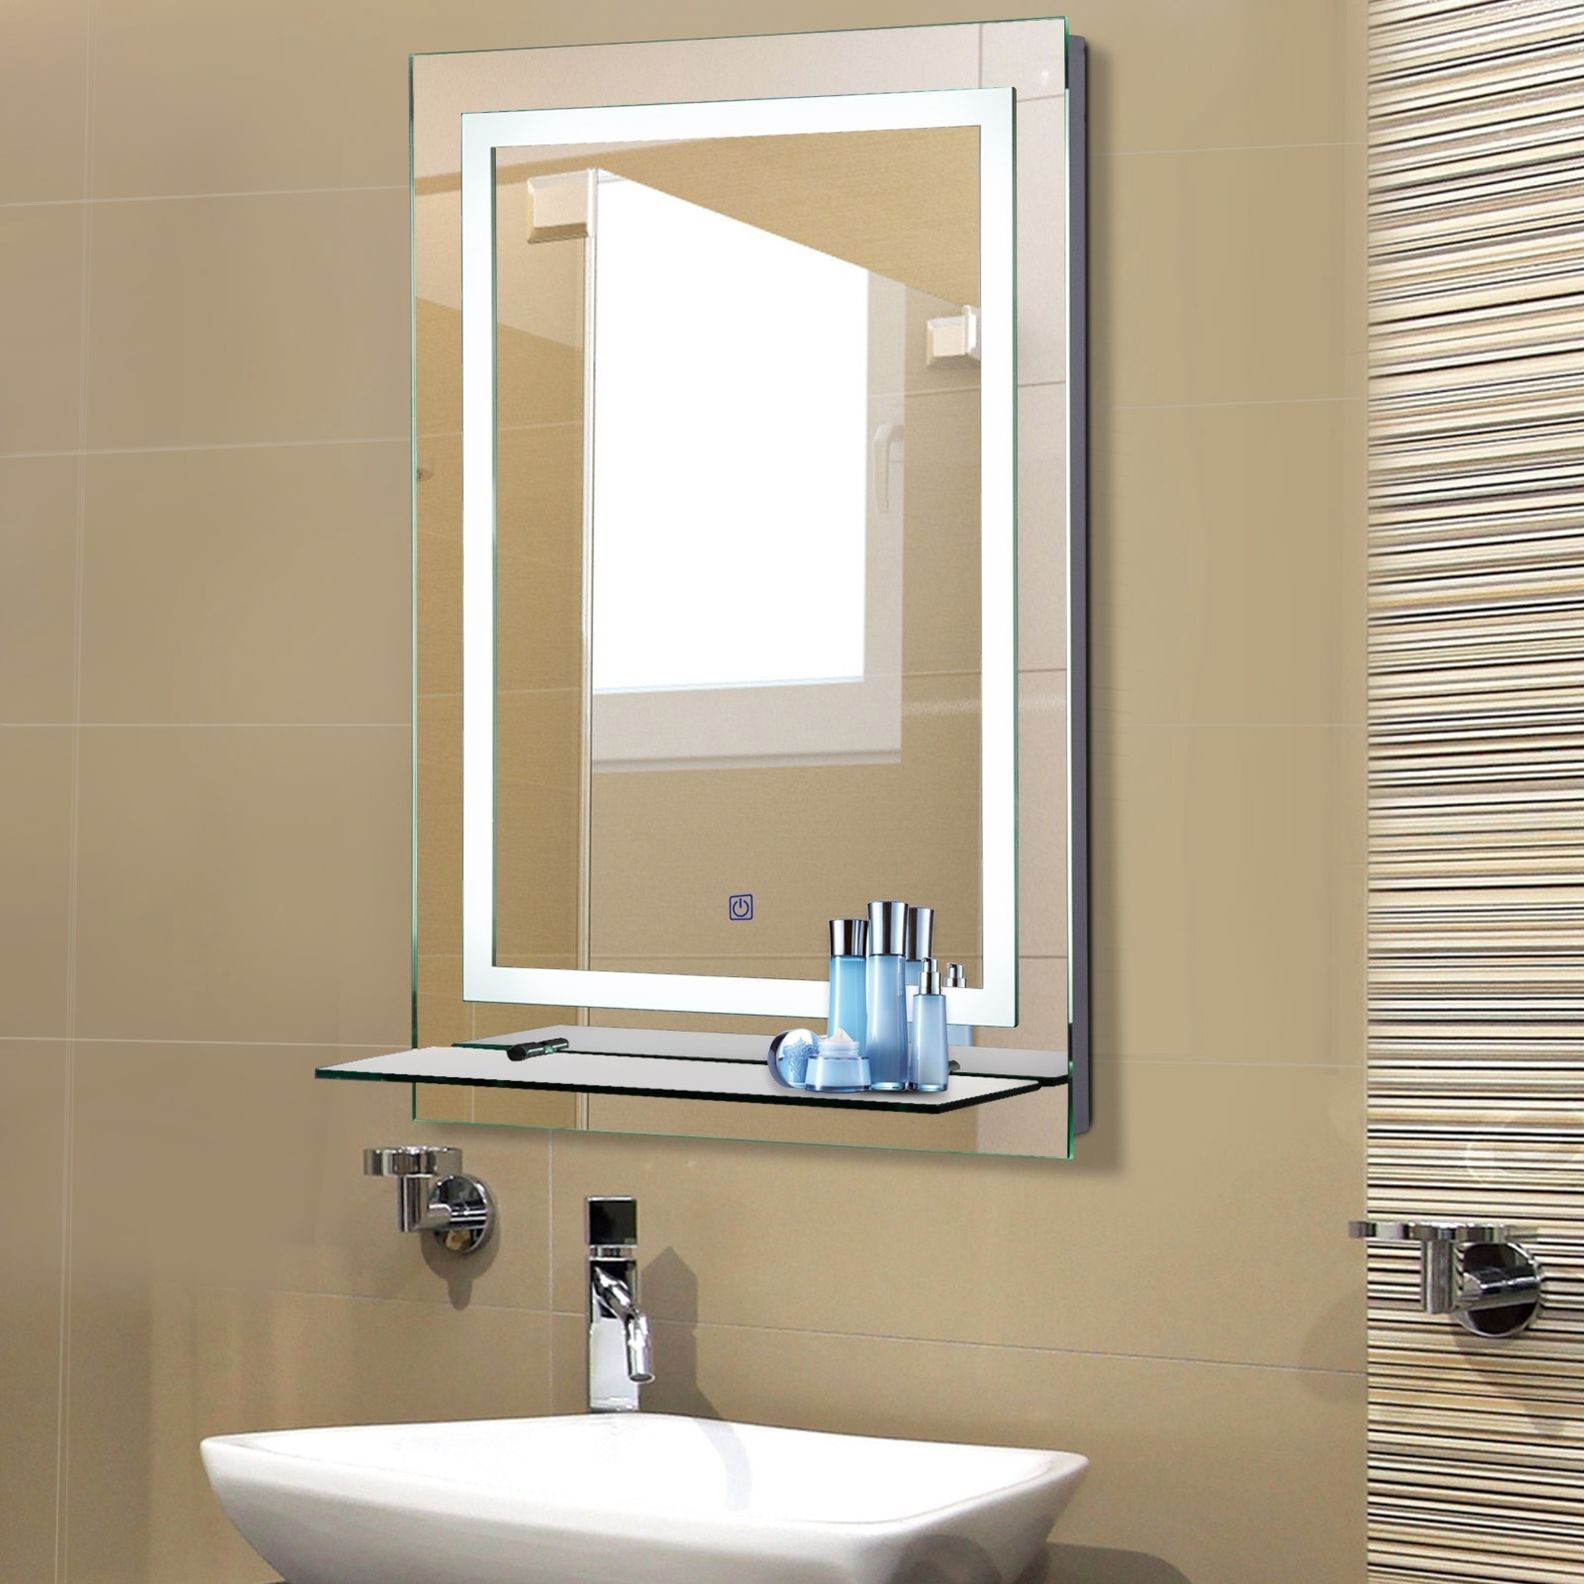 LED Badezimmerspiegel mit Glas-Ablage bestellen | Weltbild.de